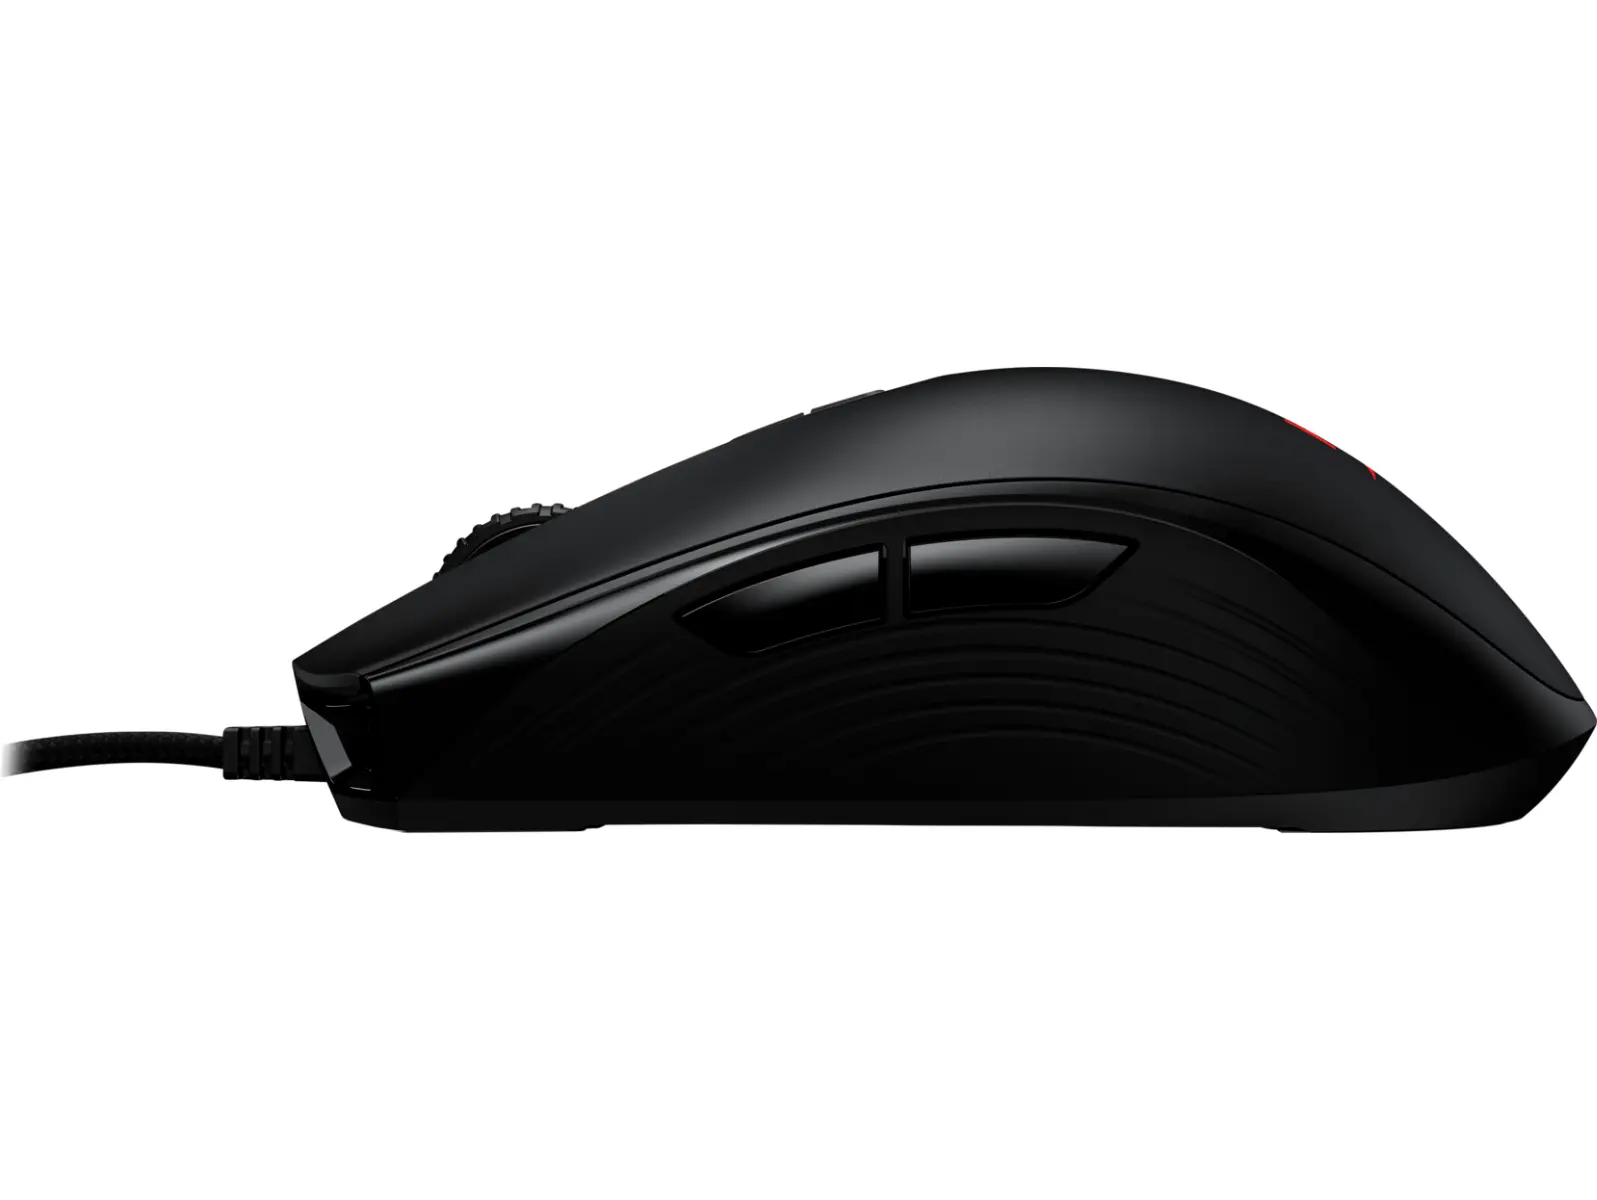 Mouse gaming HP cu fir, HyperX Pulsefire Core, Pixart 3327 sensor, DPI pana la 6.200, RGB